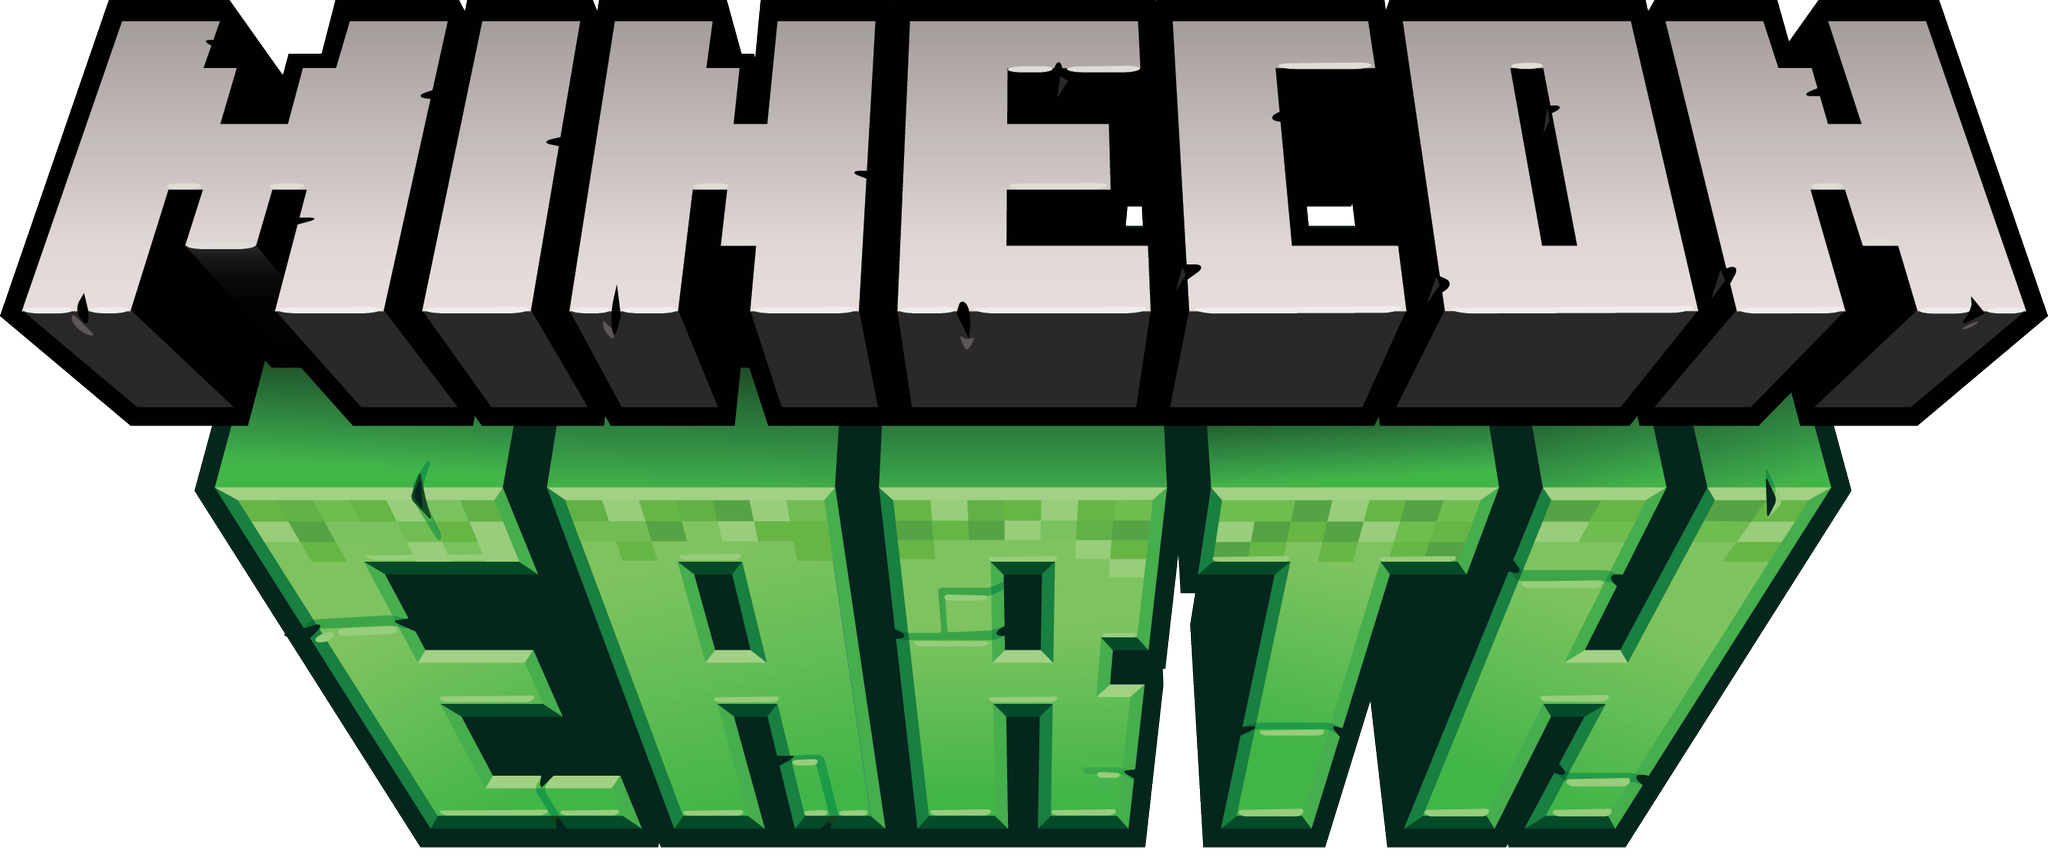 Minecraft logo png. МАЙНКОН 2018. Майнкрафт логотип. Логотип игры майнкрафт. Логотип в стиле майнкрафт.